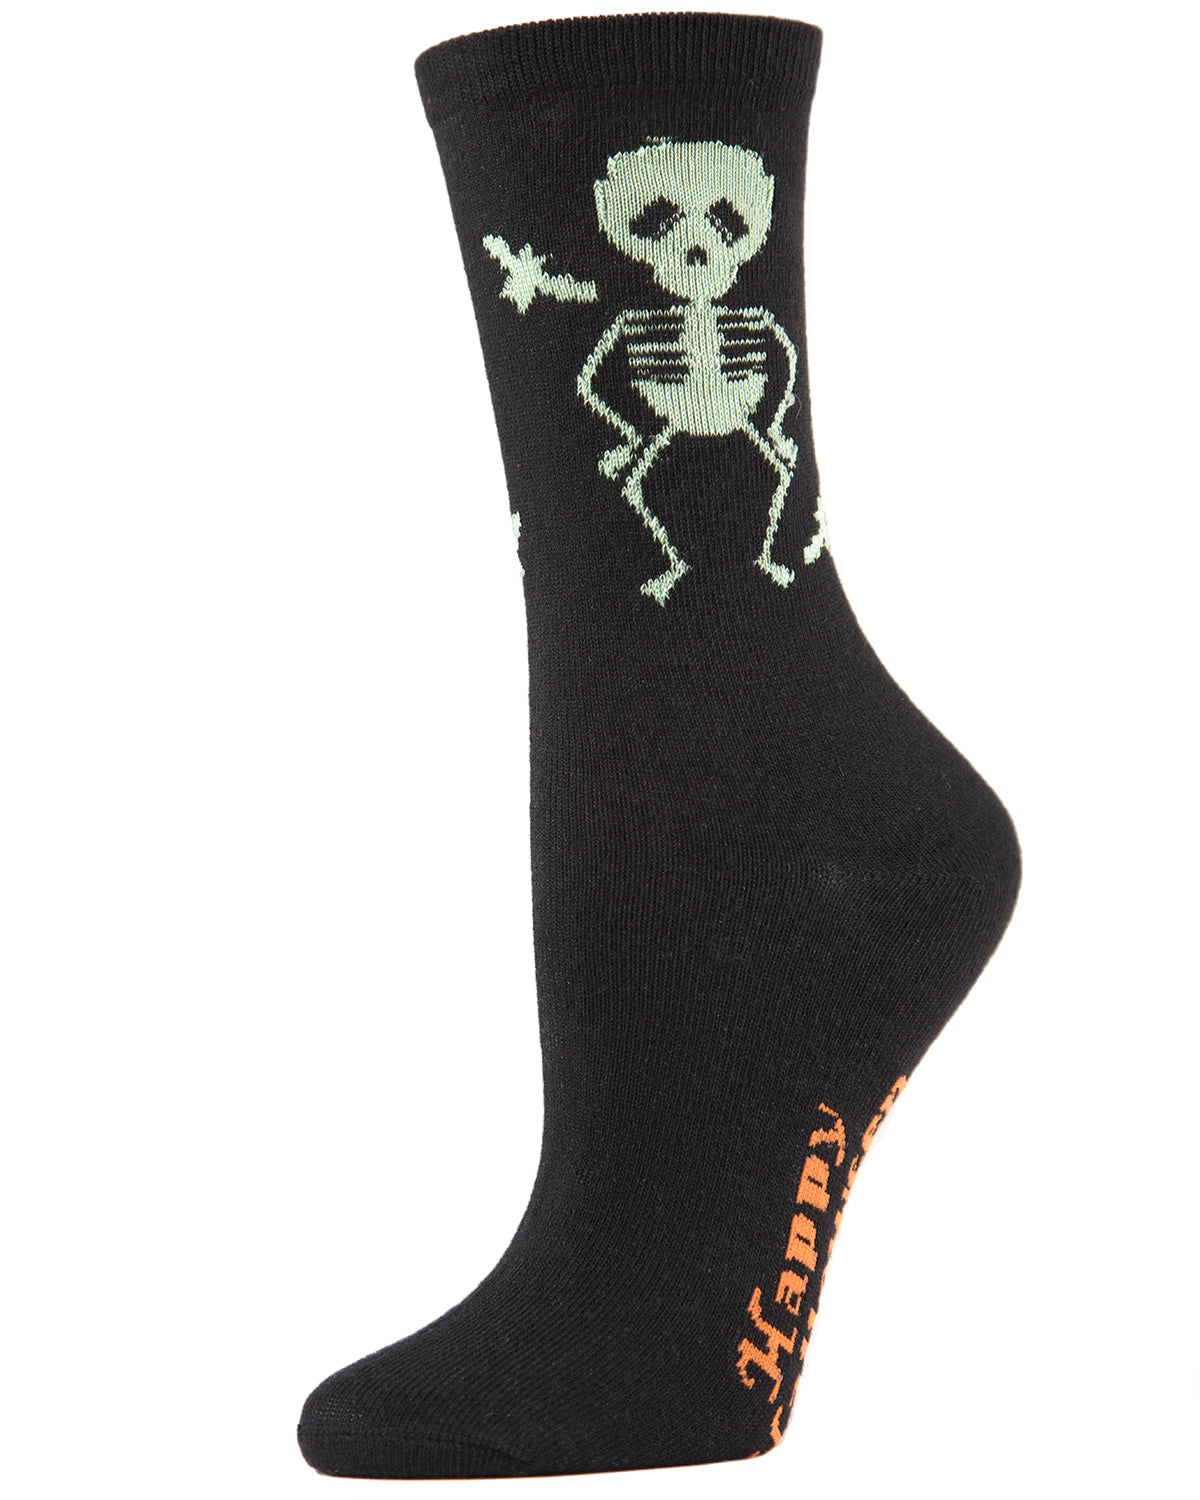 Glow in the Dark Skeleton Crew Socks